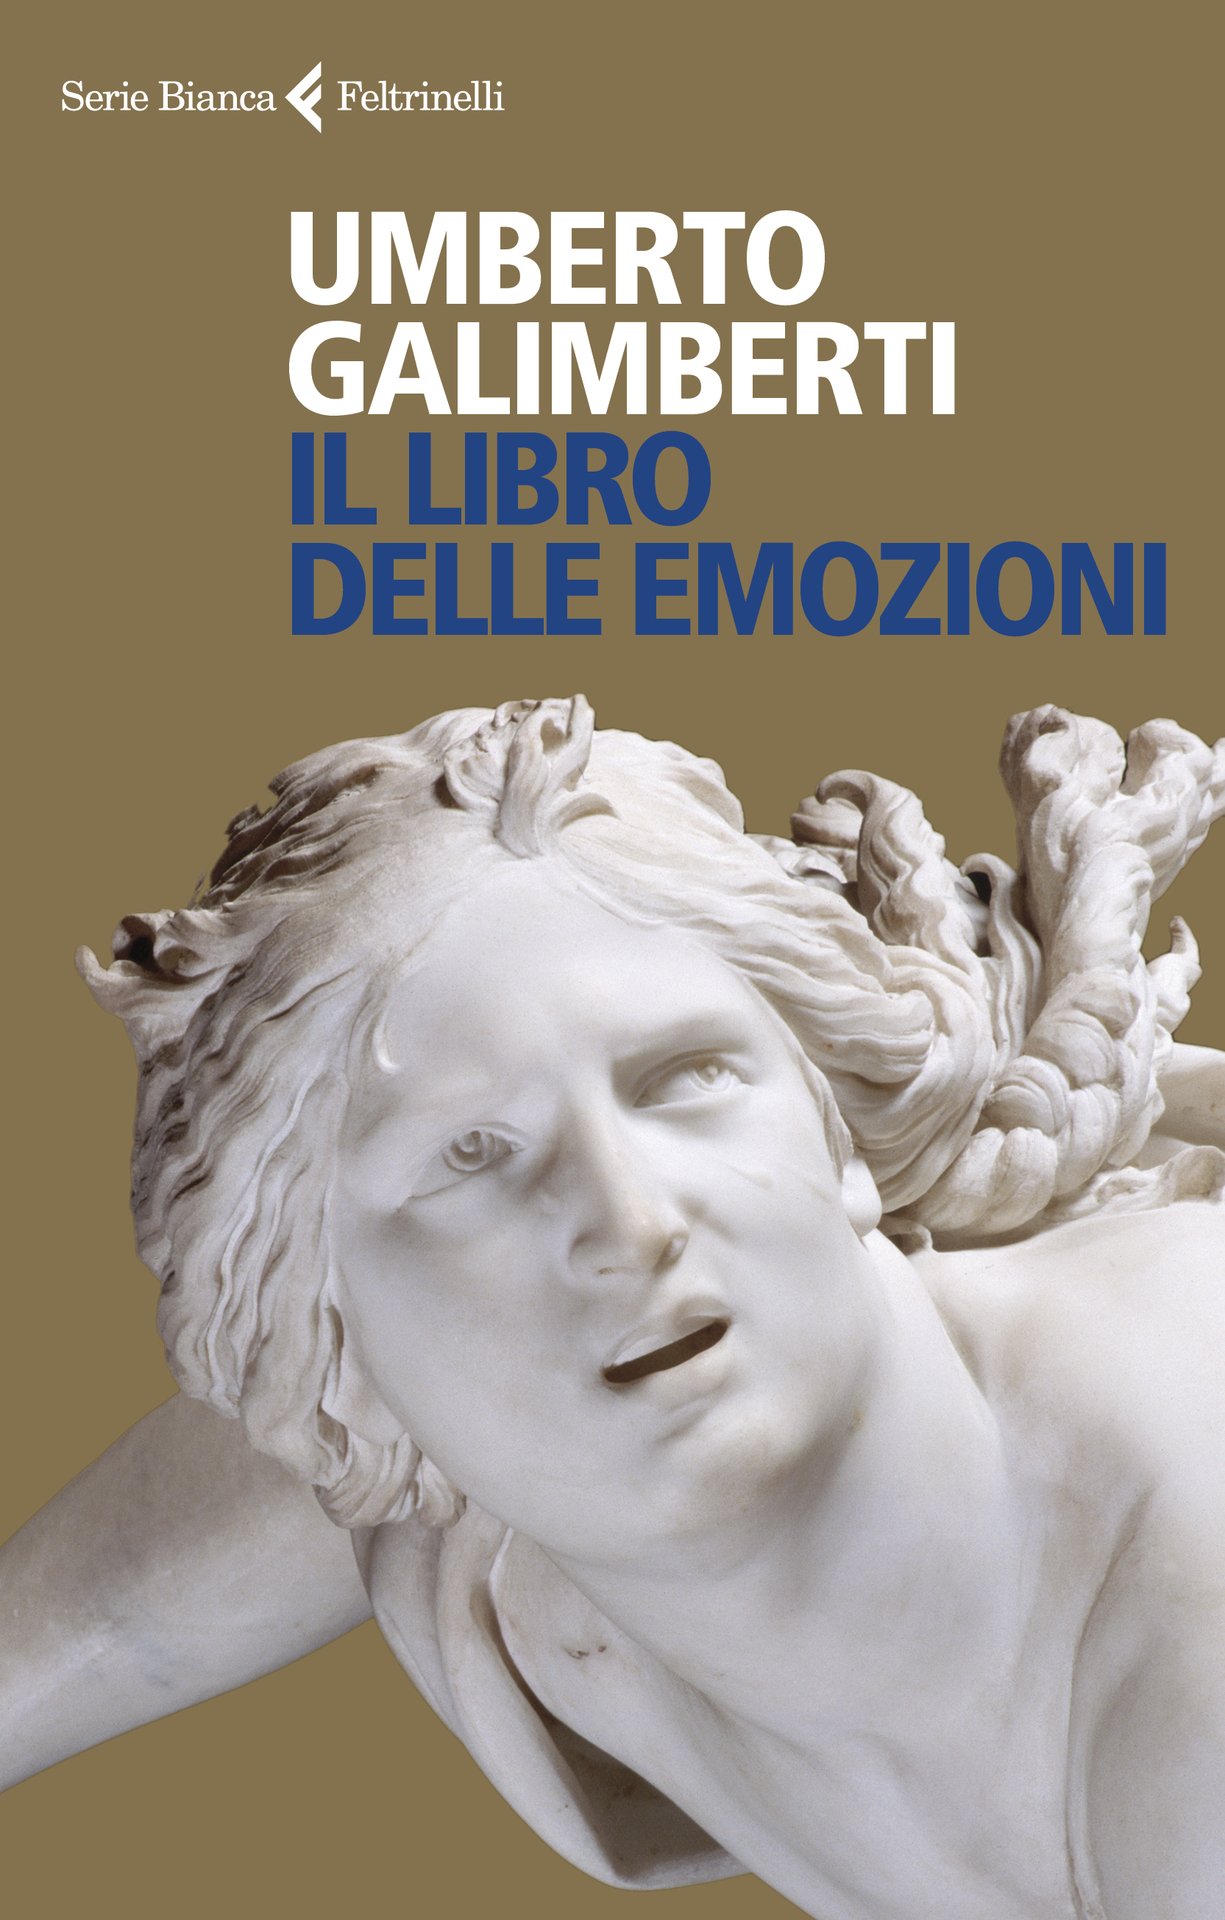 Maratona di lettura con Umberto Galimberti. Feltre 16-20 novembre 